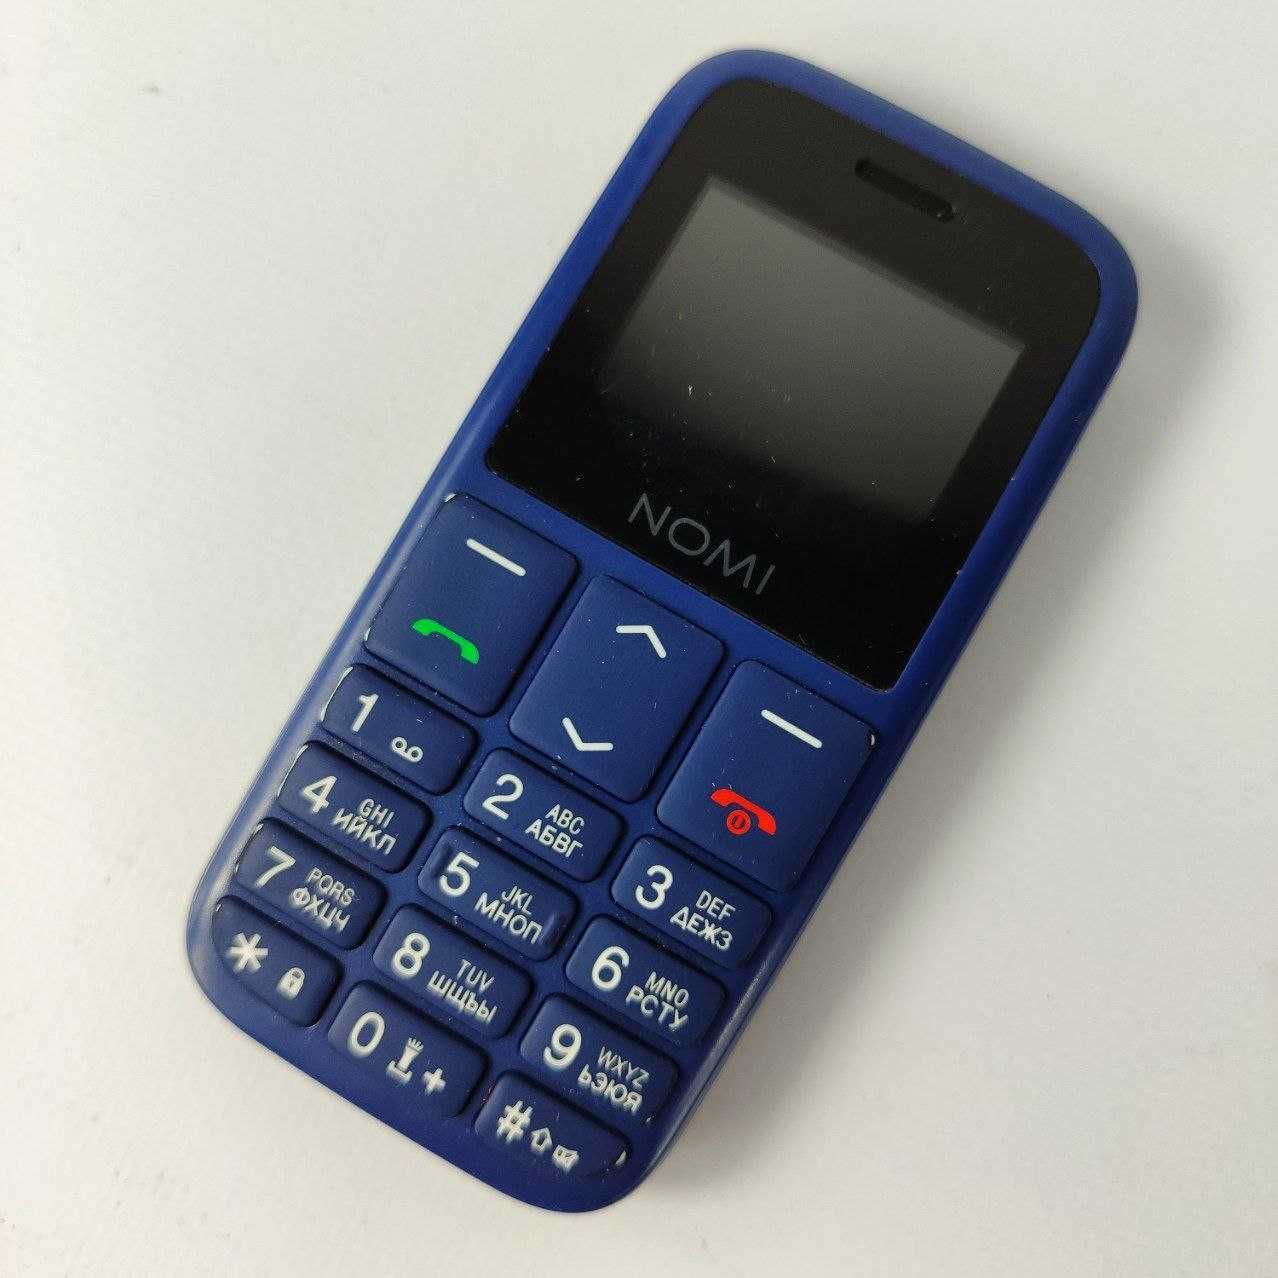 Мобильный телефон Nomi i1870, i189s i220 не рабочее/на запчасти